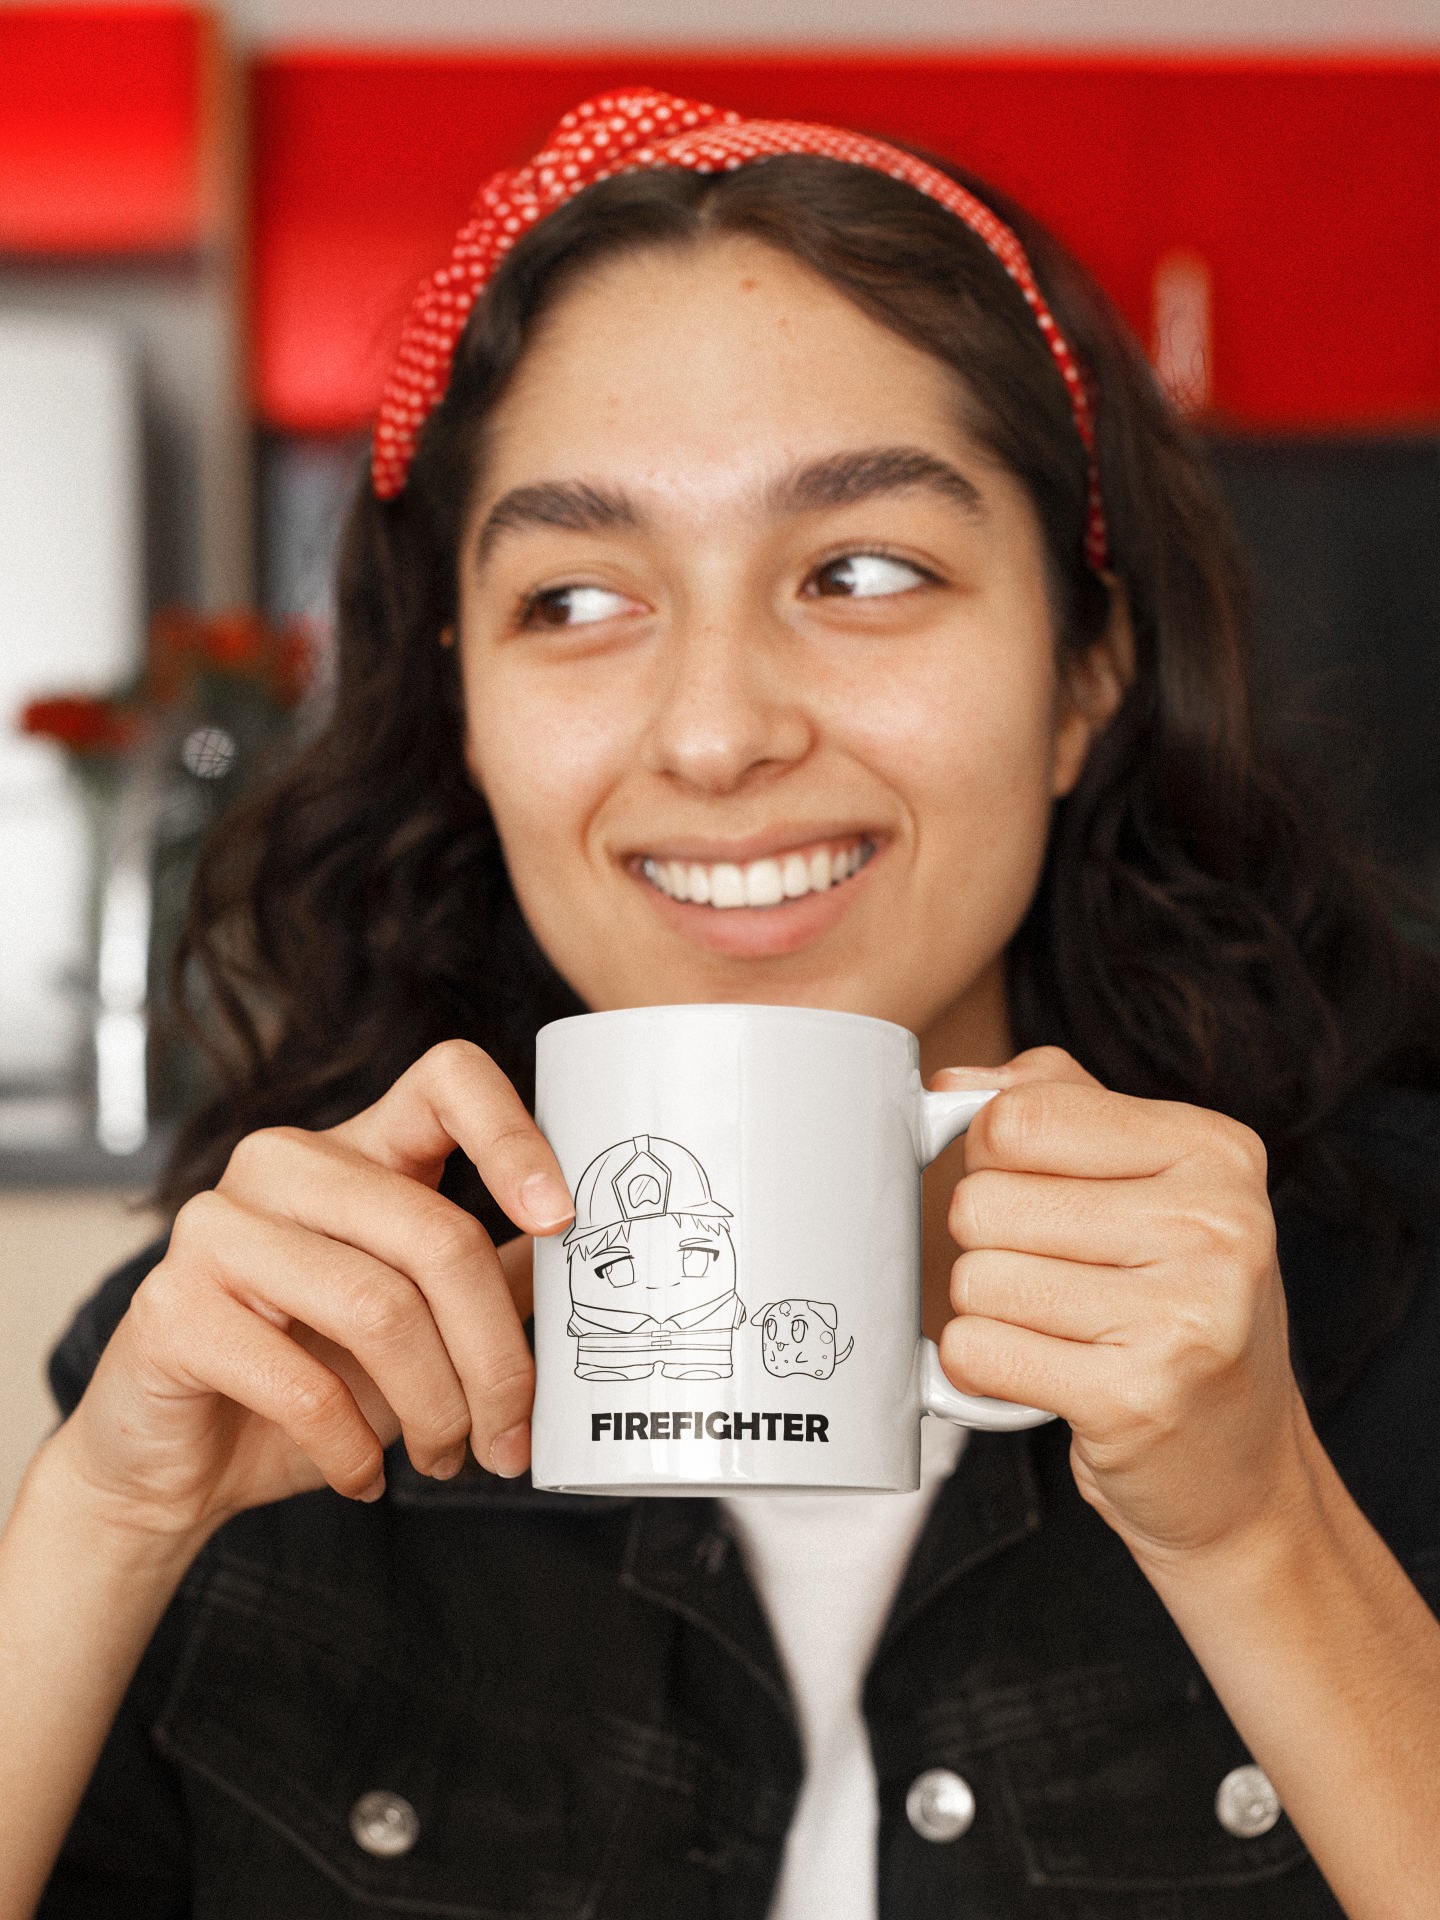 Firefighter| 11oz or 15oz | Funny Occupational Coffee Mug, Humorous Quote Coffee Mug, Tea Mug